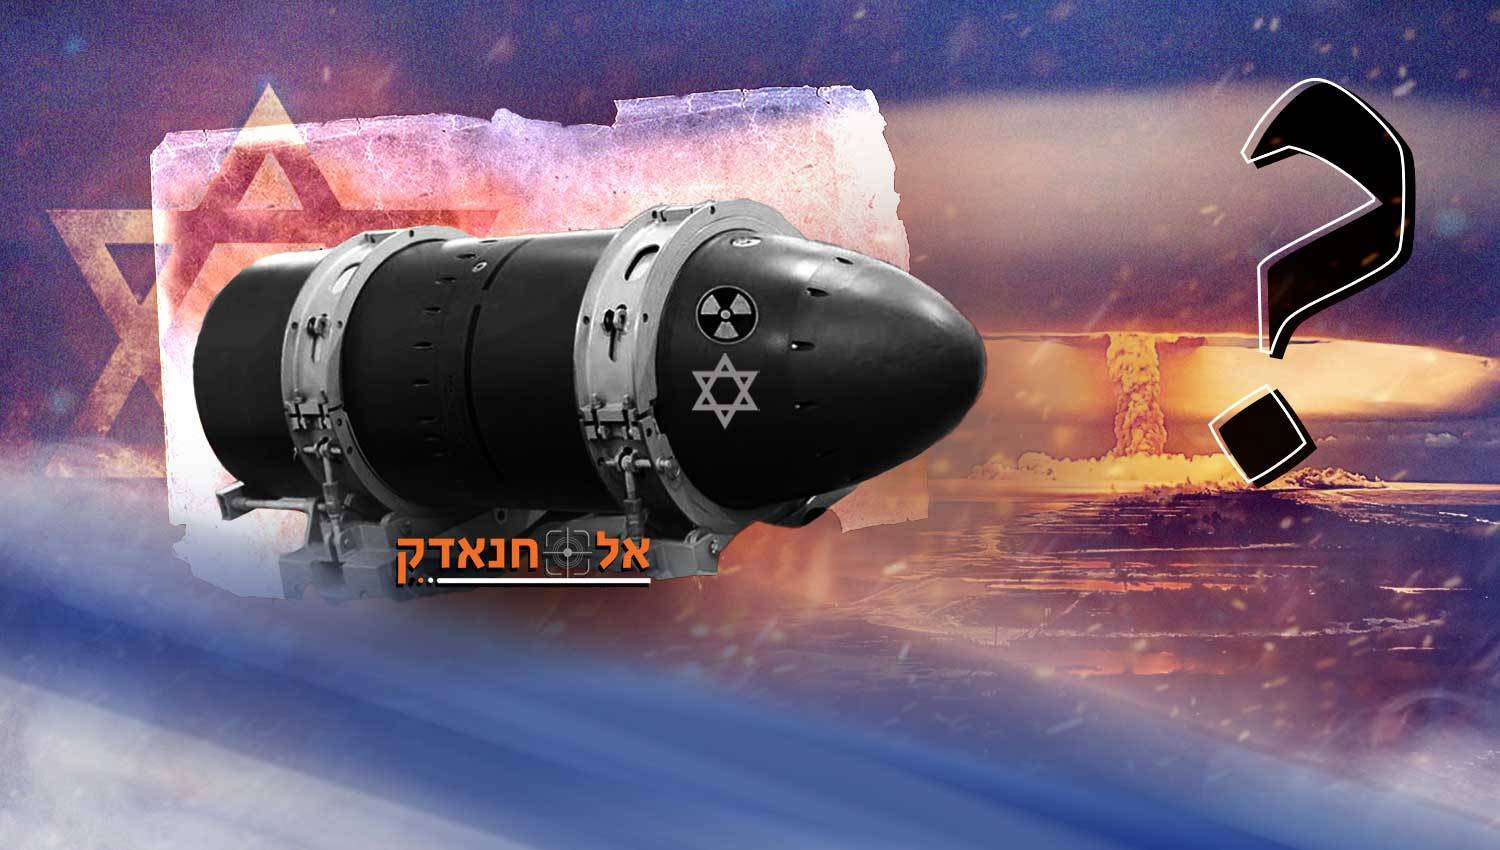 מתי ישראל משתמשת בפצצה הגרעינית?